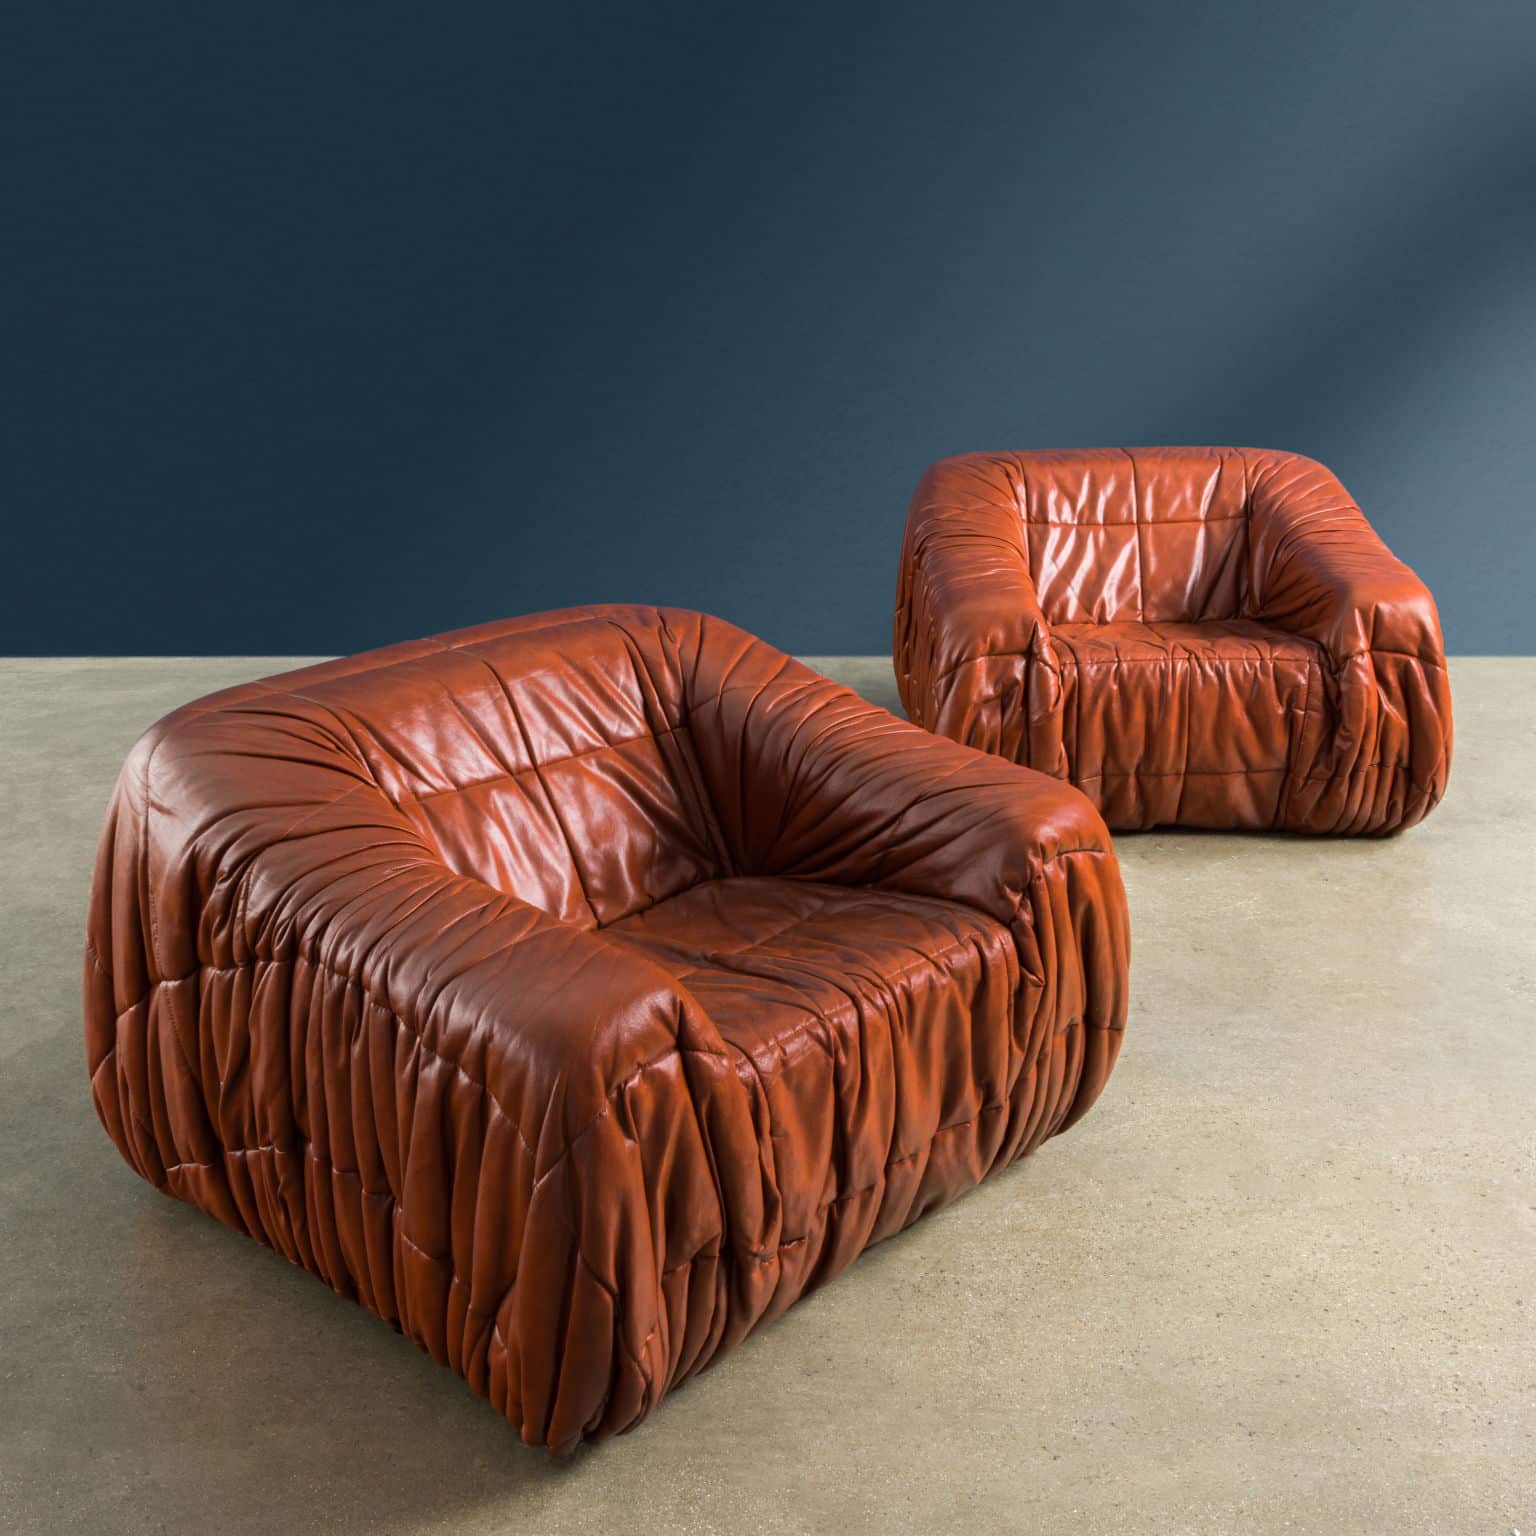 ‘Piumino’ armchairs by De Pas, D’Urbino & Lomazzi for Dall’Oca